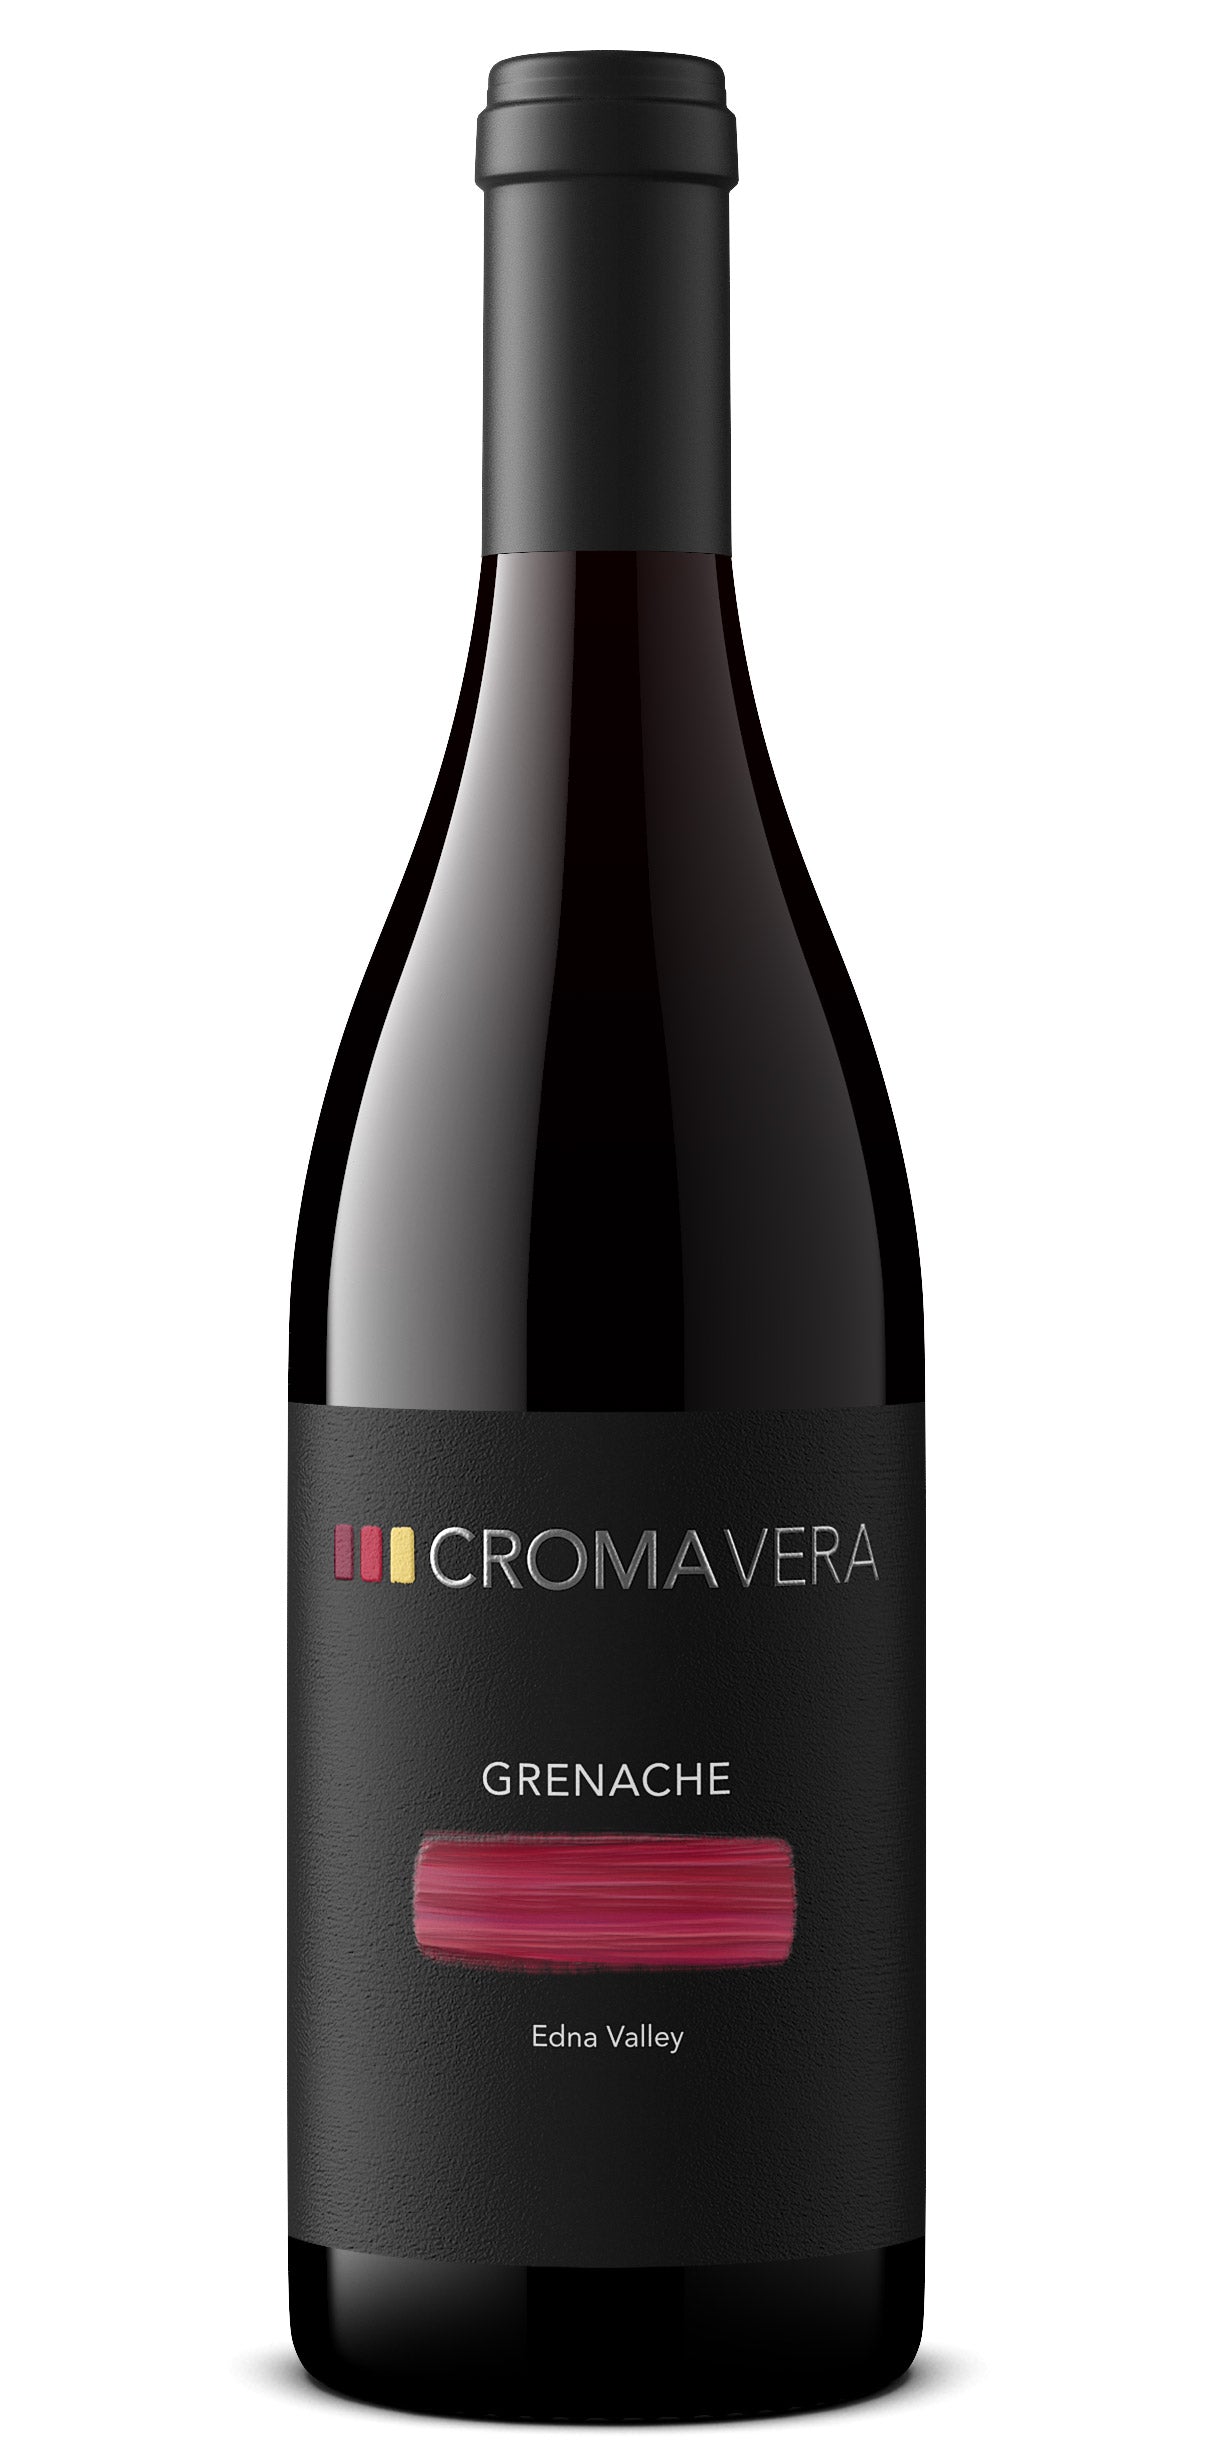 A bottle of Croma Vera Grenache red wine